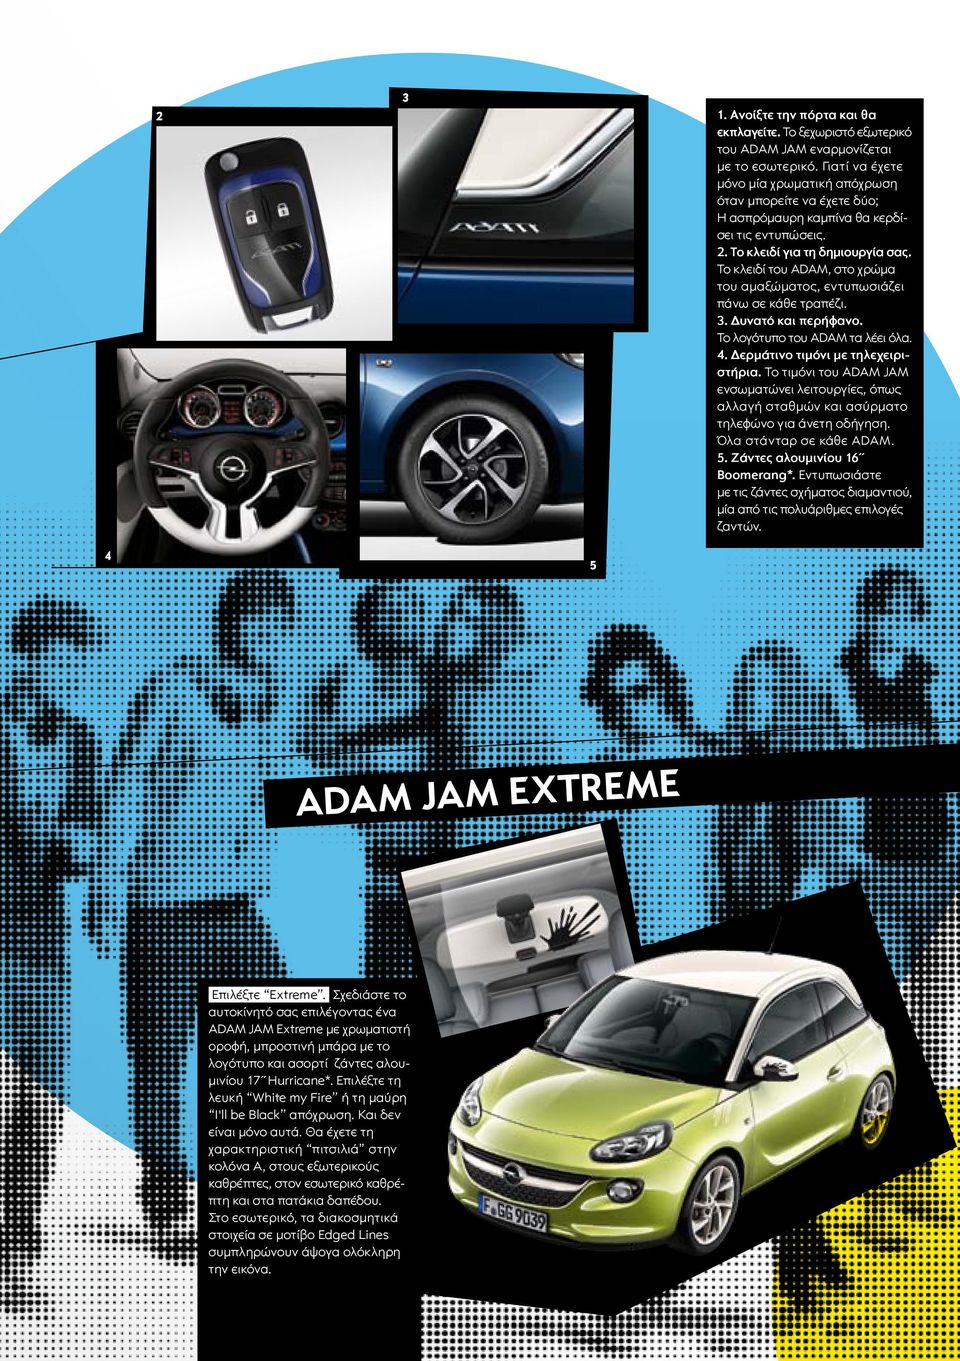 Το κλειδί του ADAM, στο χρώμα του αμαξώματος, εντυπωσιάζει πάνω σε κάθε τραπέζι. 3. Δυνατό και περήφανο. Το λογότυπο του ADAM τα λέει όλα. 4. Δερμάτινο τιμόνι με τηλεχειριστήρια.